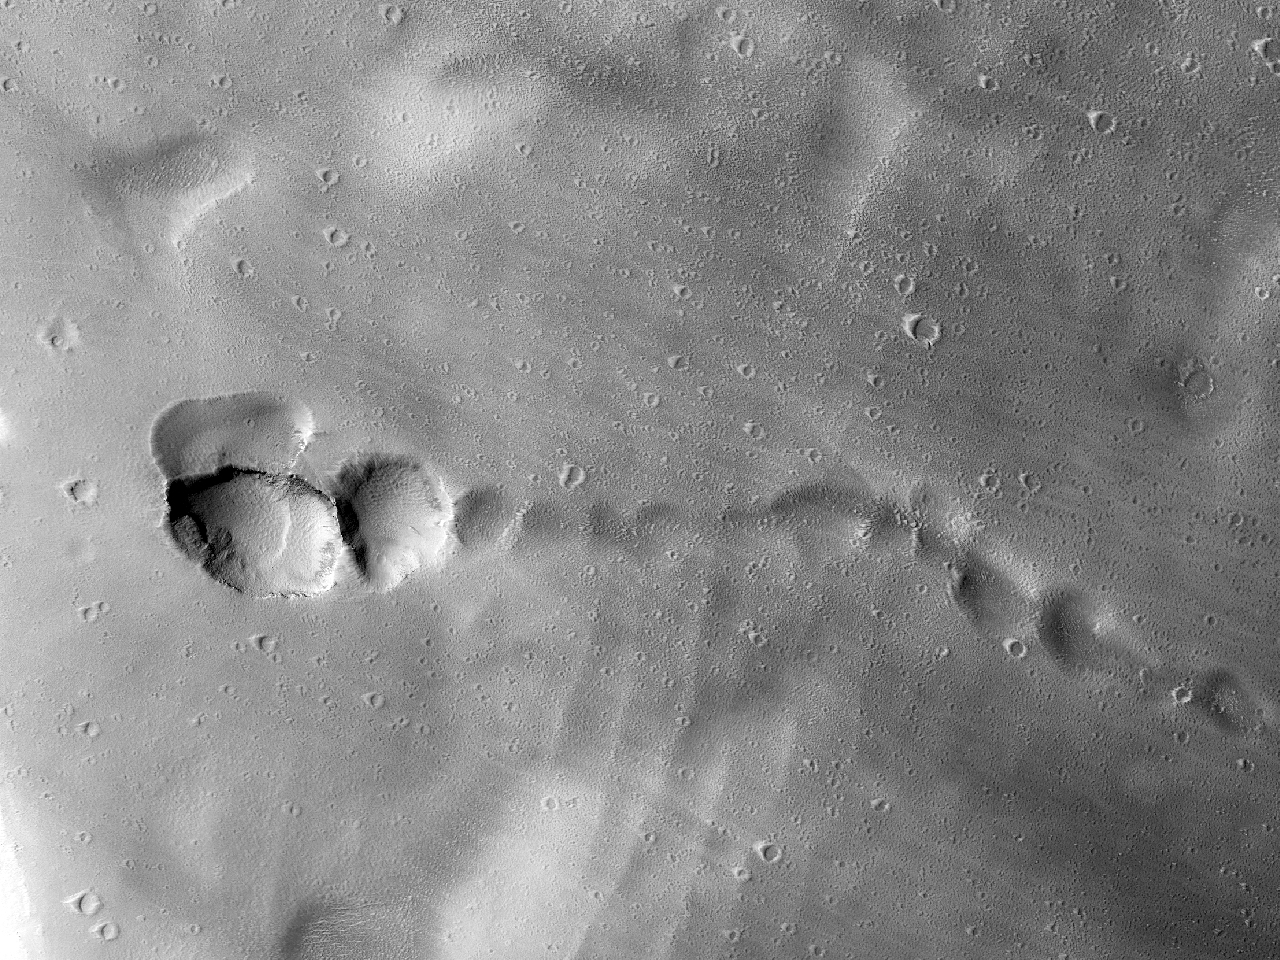 הצד המערבי של אולימפוס מונס (Olympus Mons)